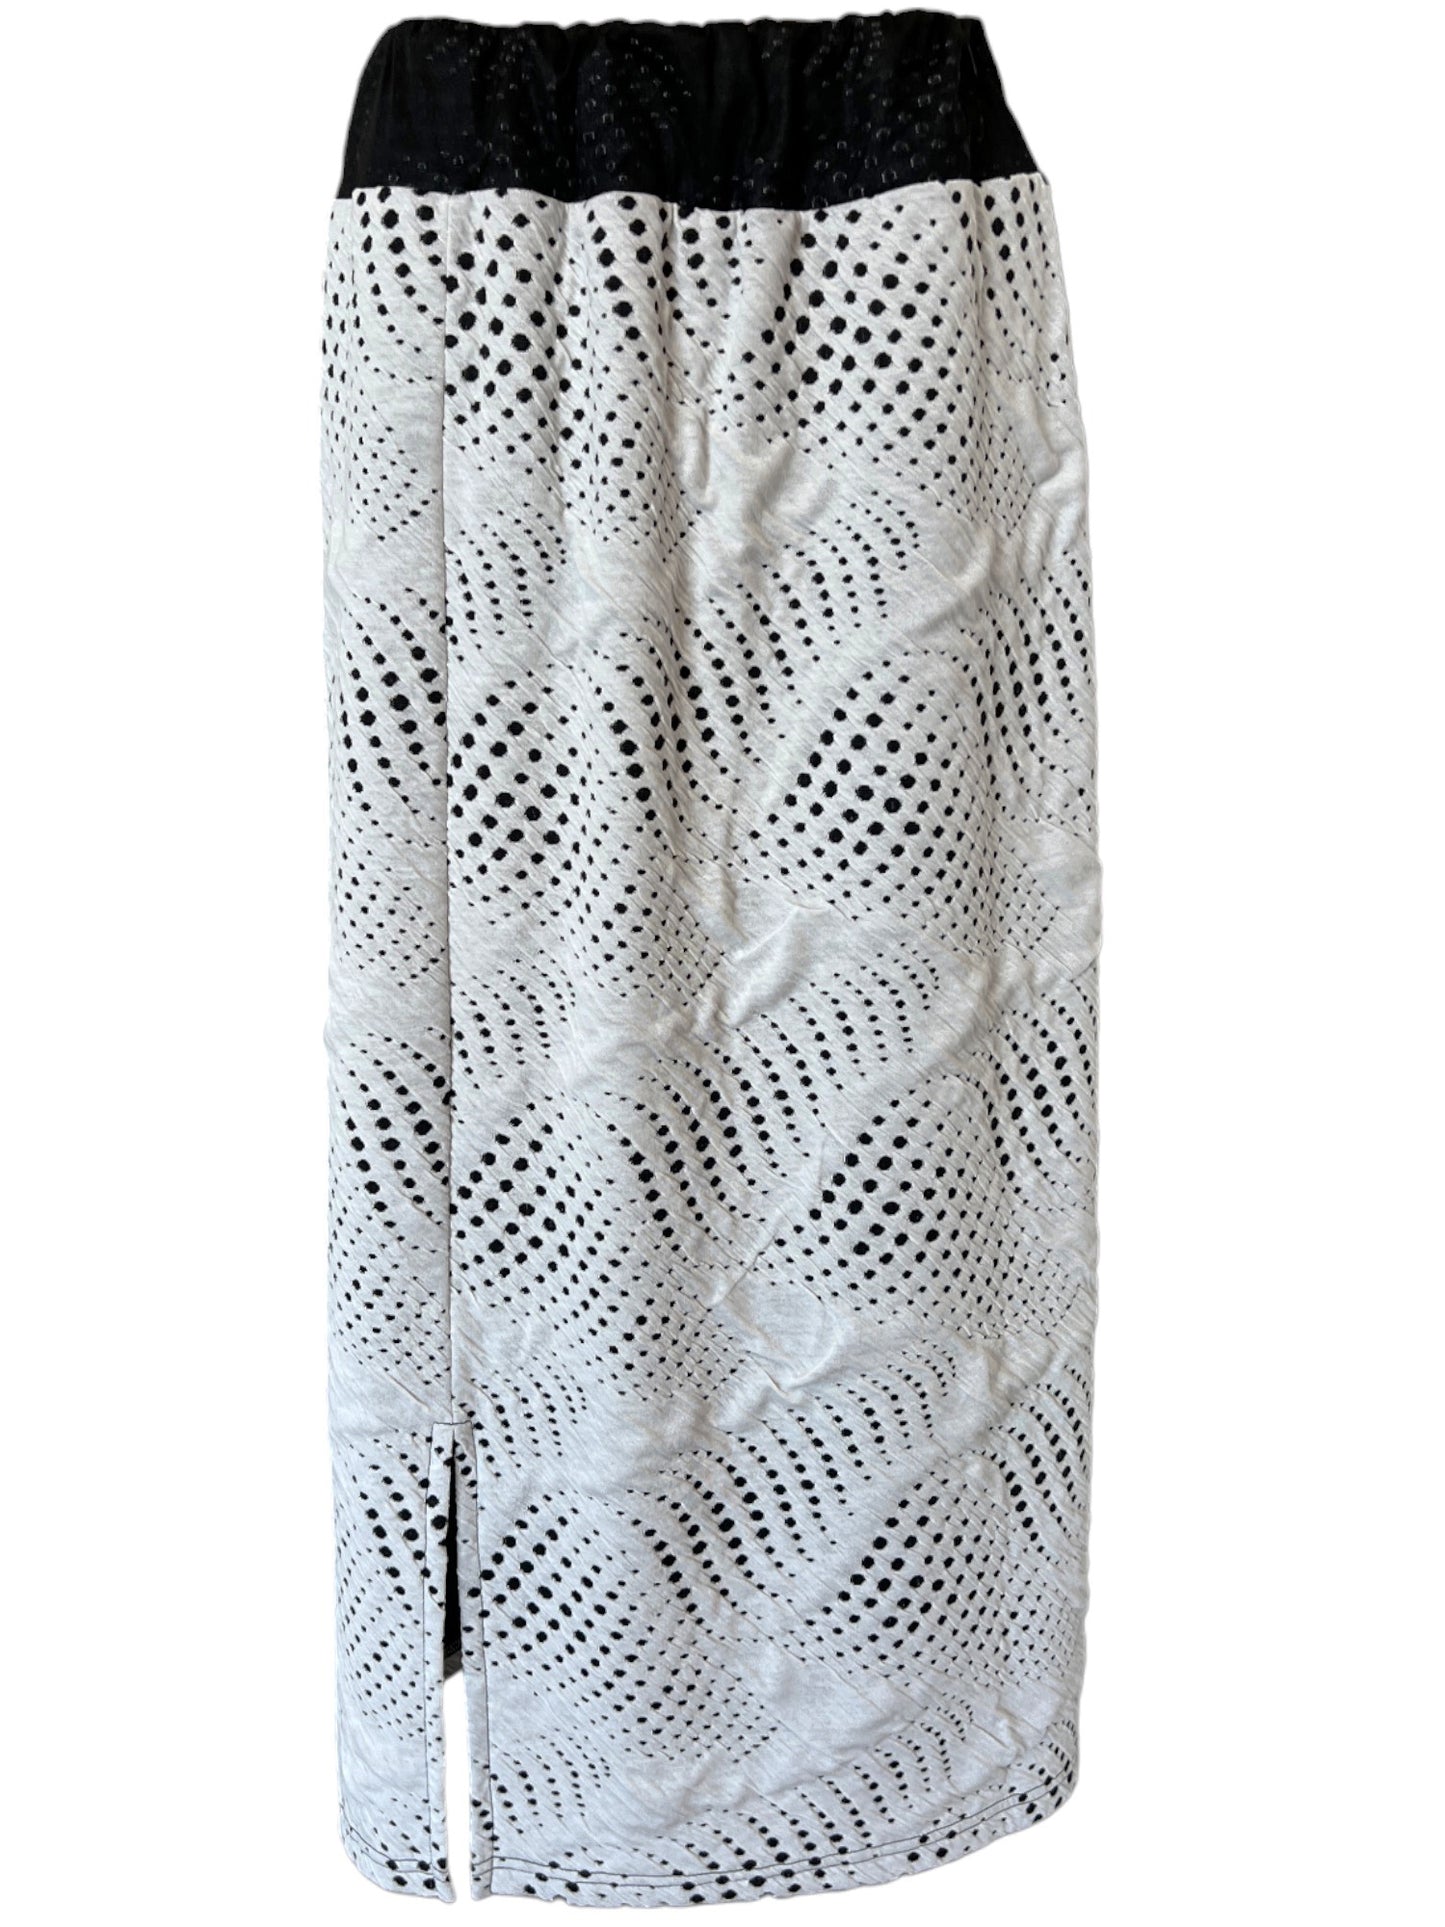 Jacquard Dot Skirt in Cement